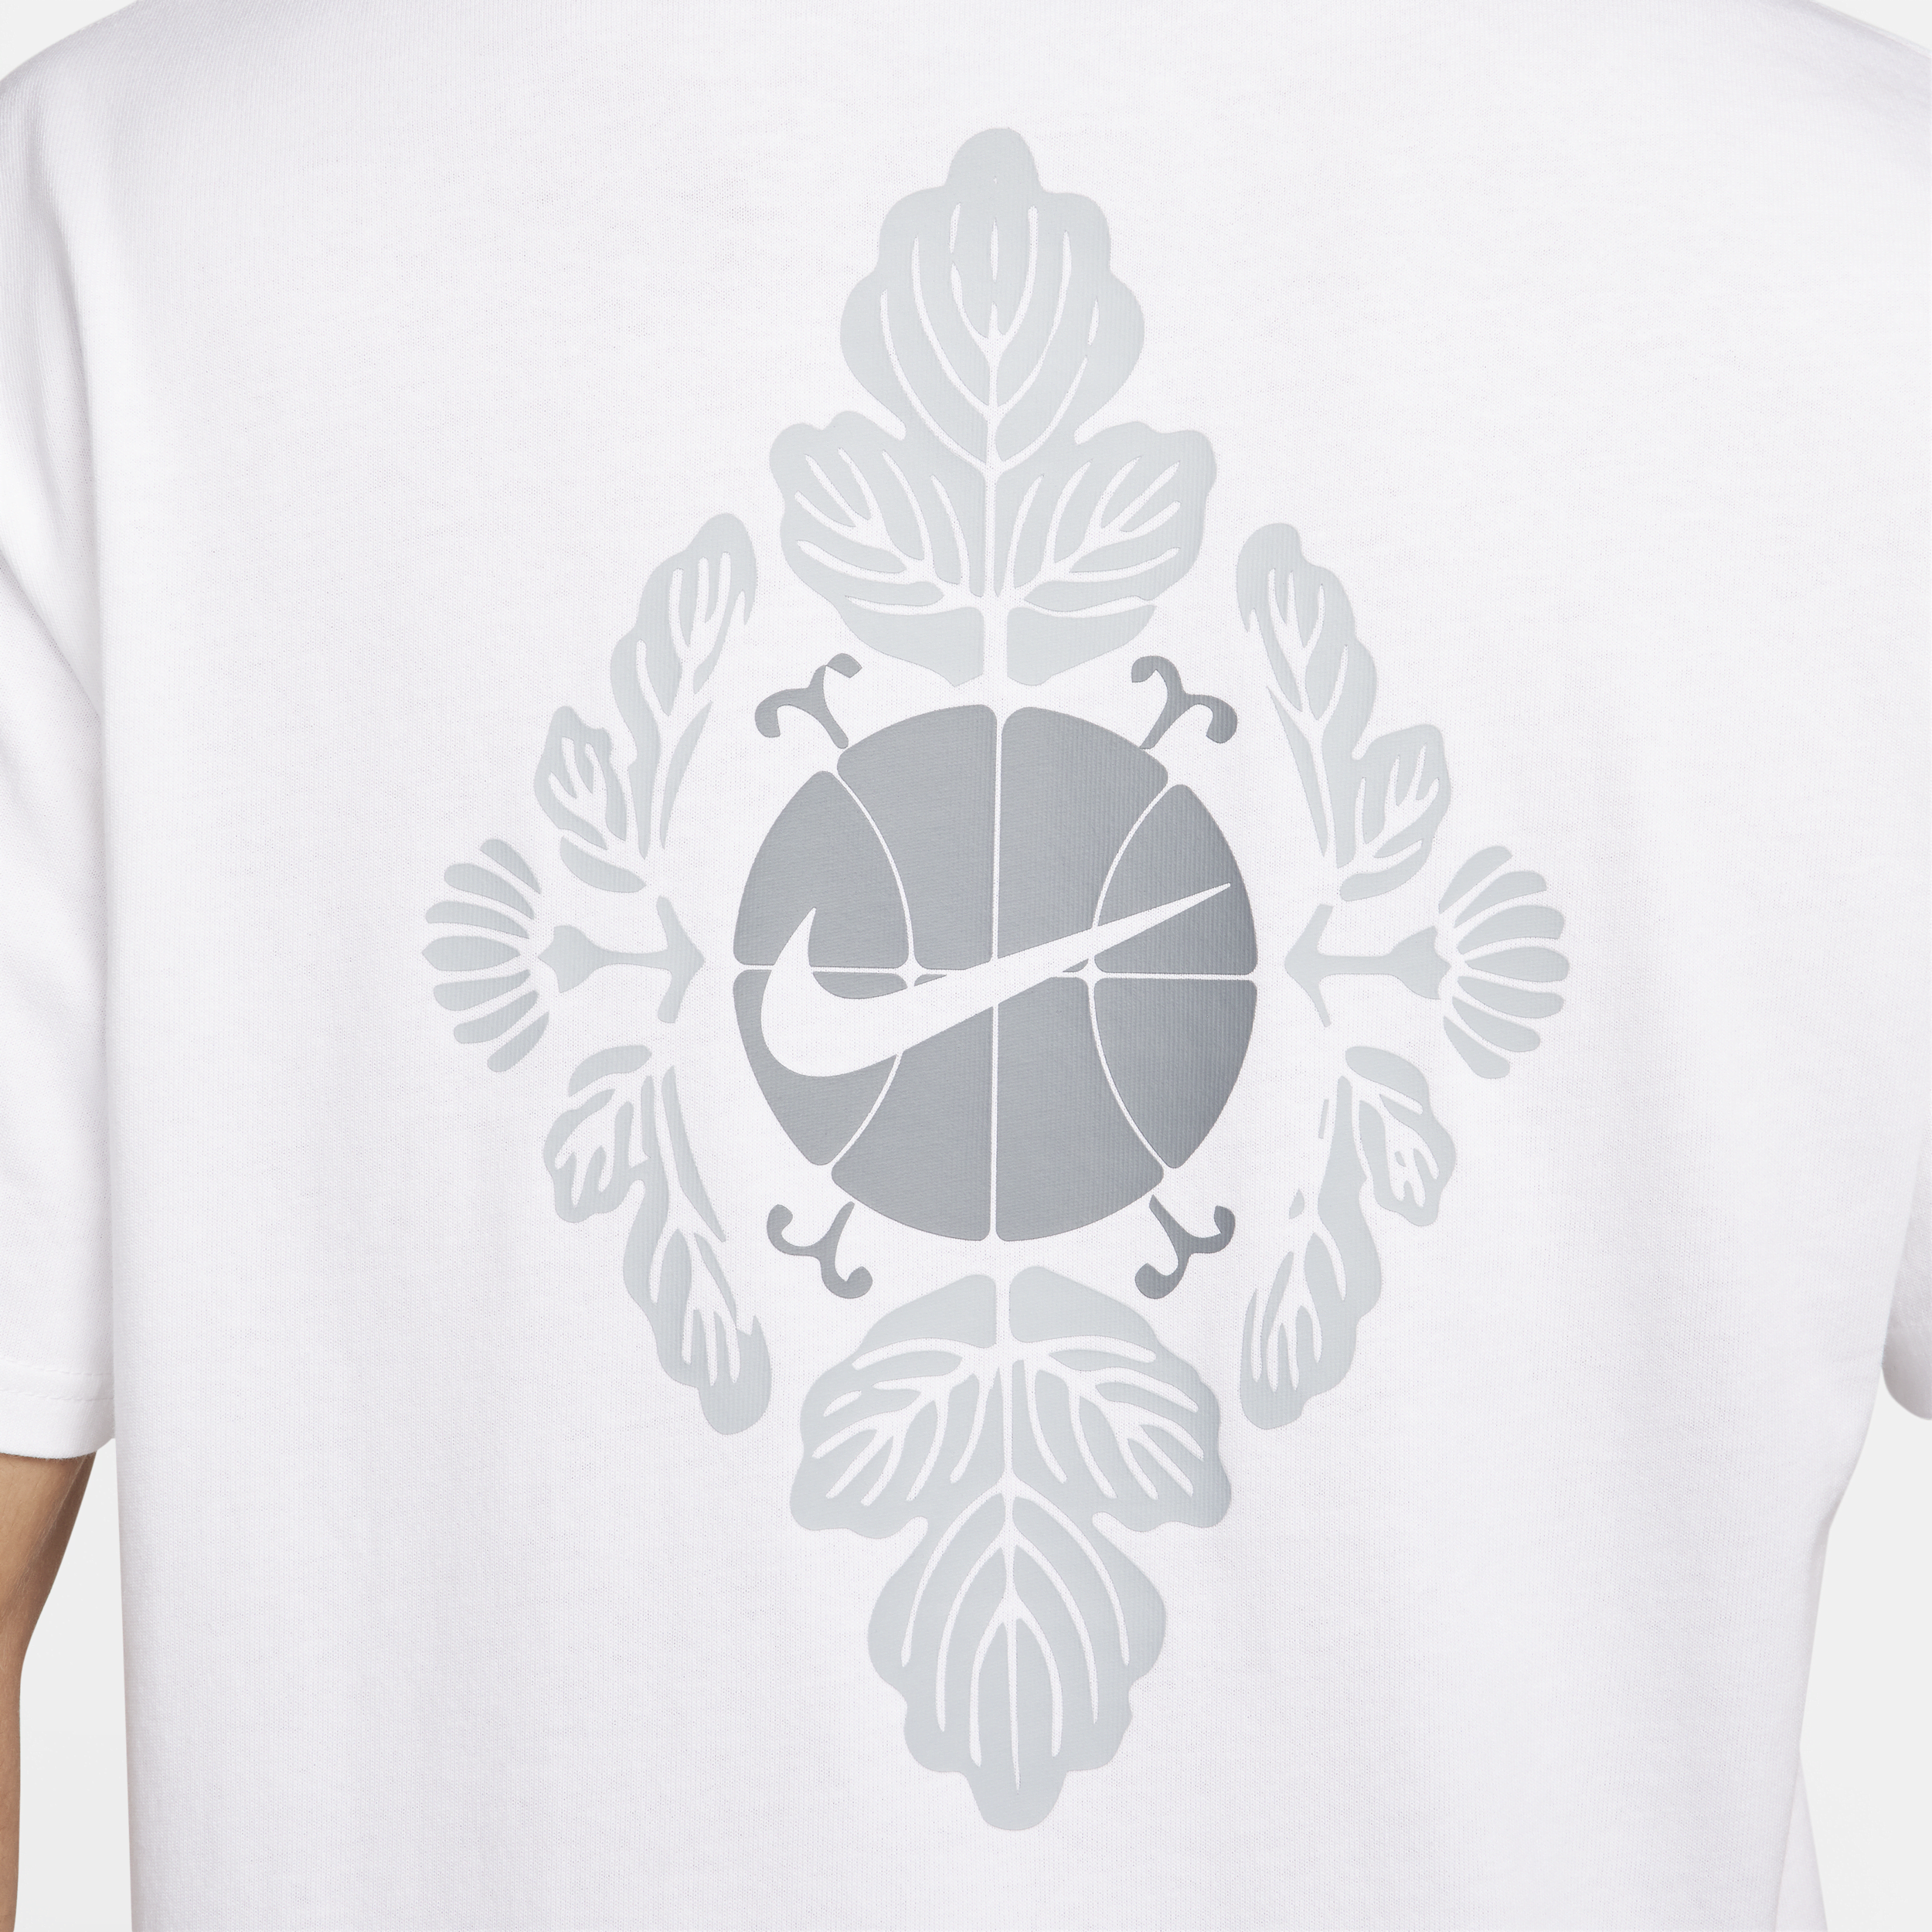 Nike Max90 basketbalshirt voor heren Wit